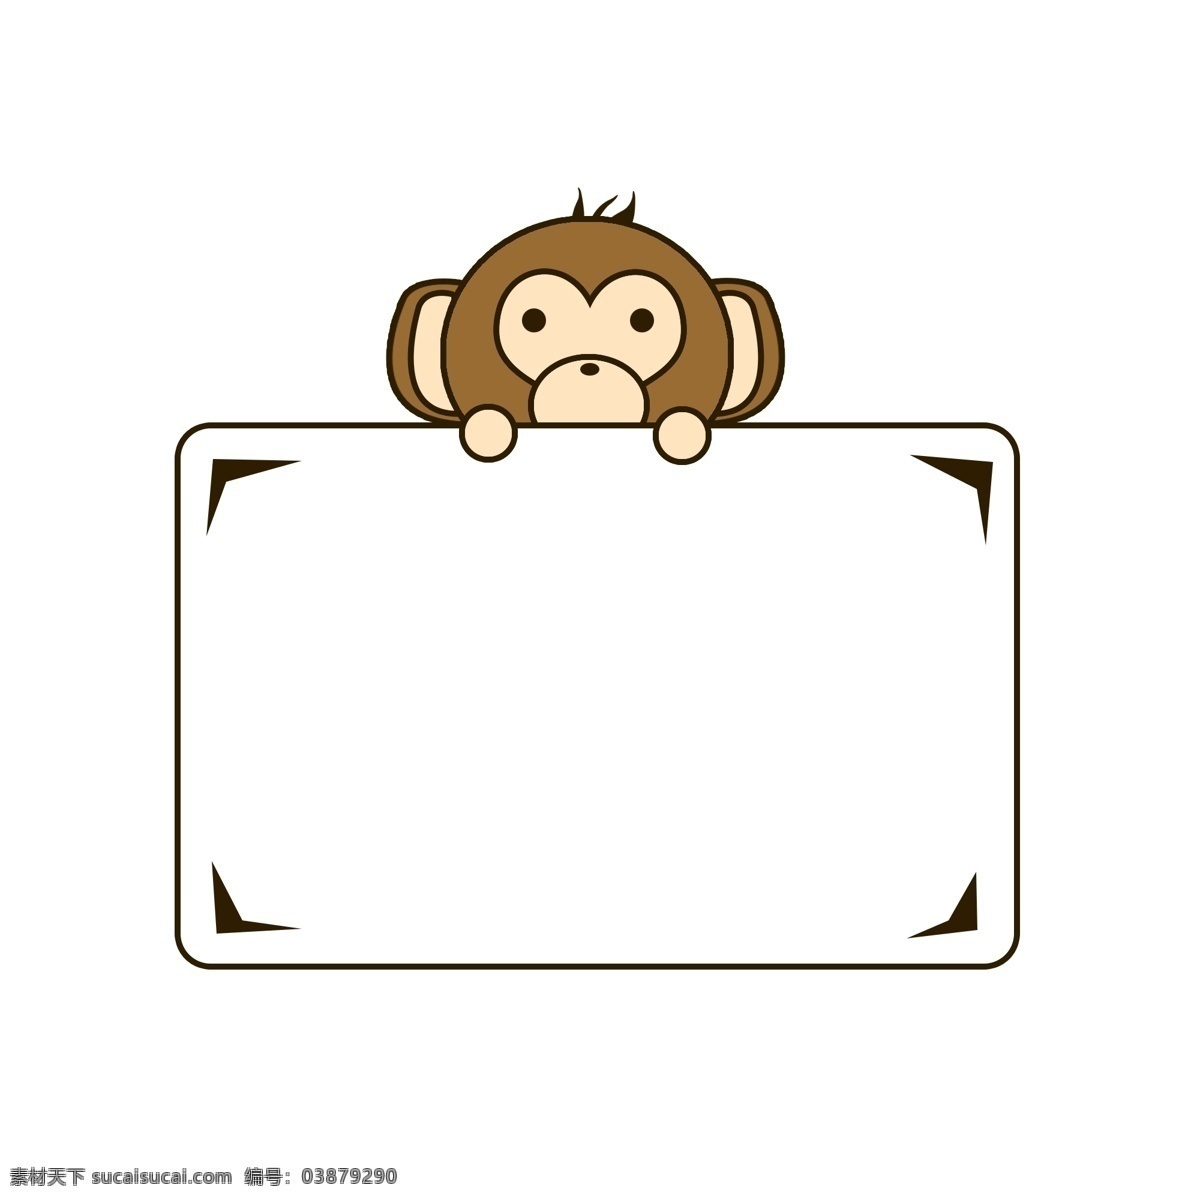 卡通 动物 猴子 边框 矢量 可爱 小猴子 矩形 三角 圆角 元素